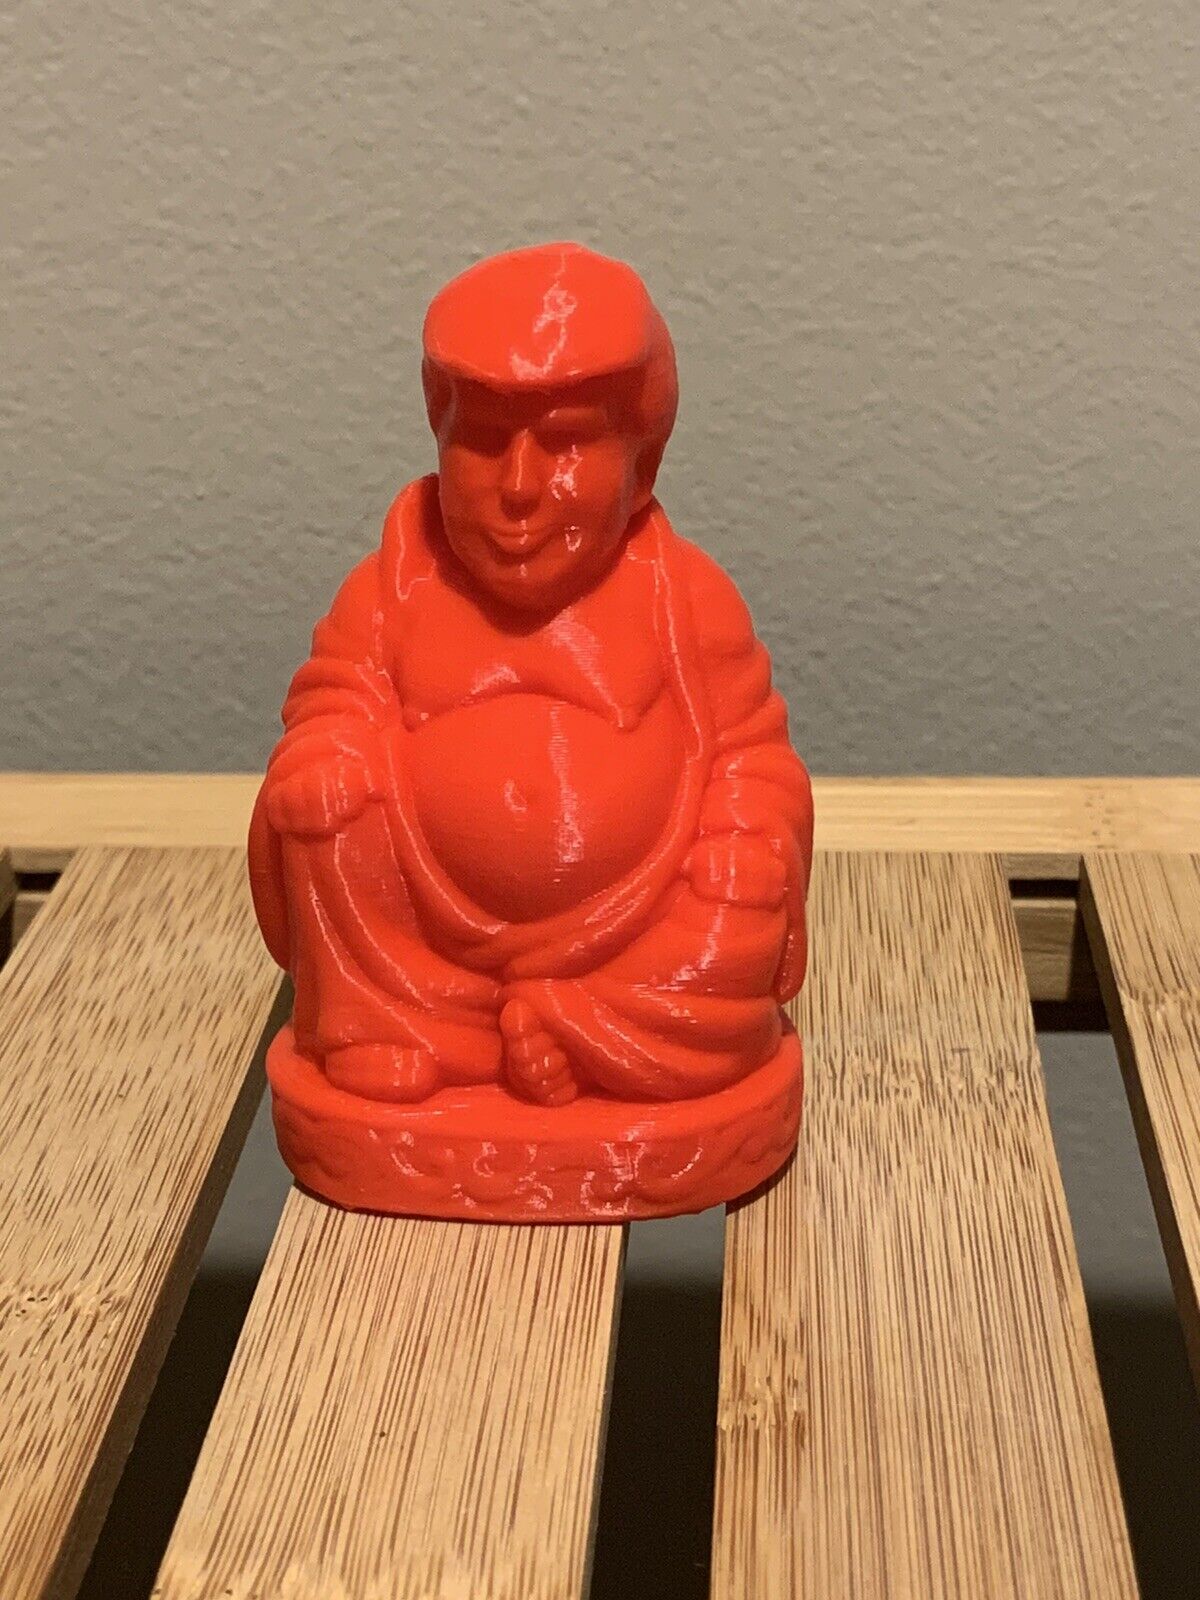 Trump Buddha 3D printed figure, Perfect Desk Ornament Or Home Decor 3 inch